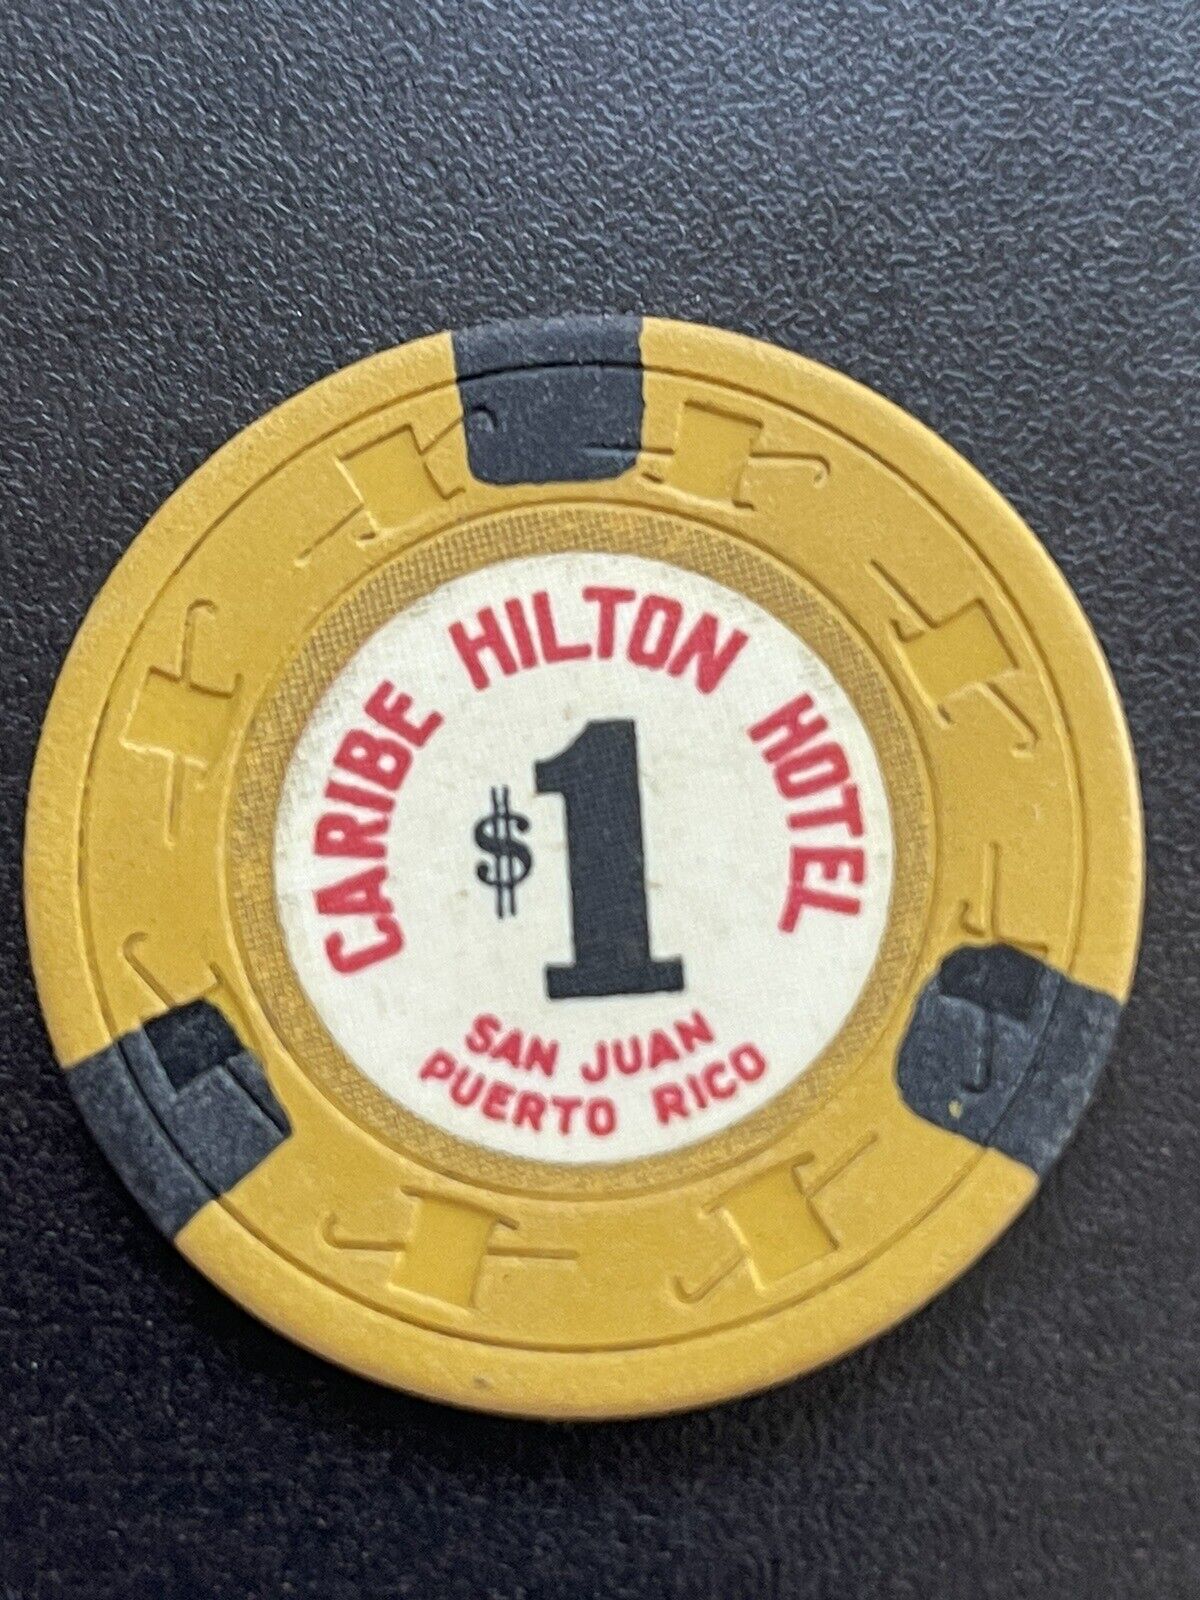 $1 Caribe Hilton San Juan Puerto Rico Casino Chip Very Rare